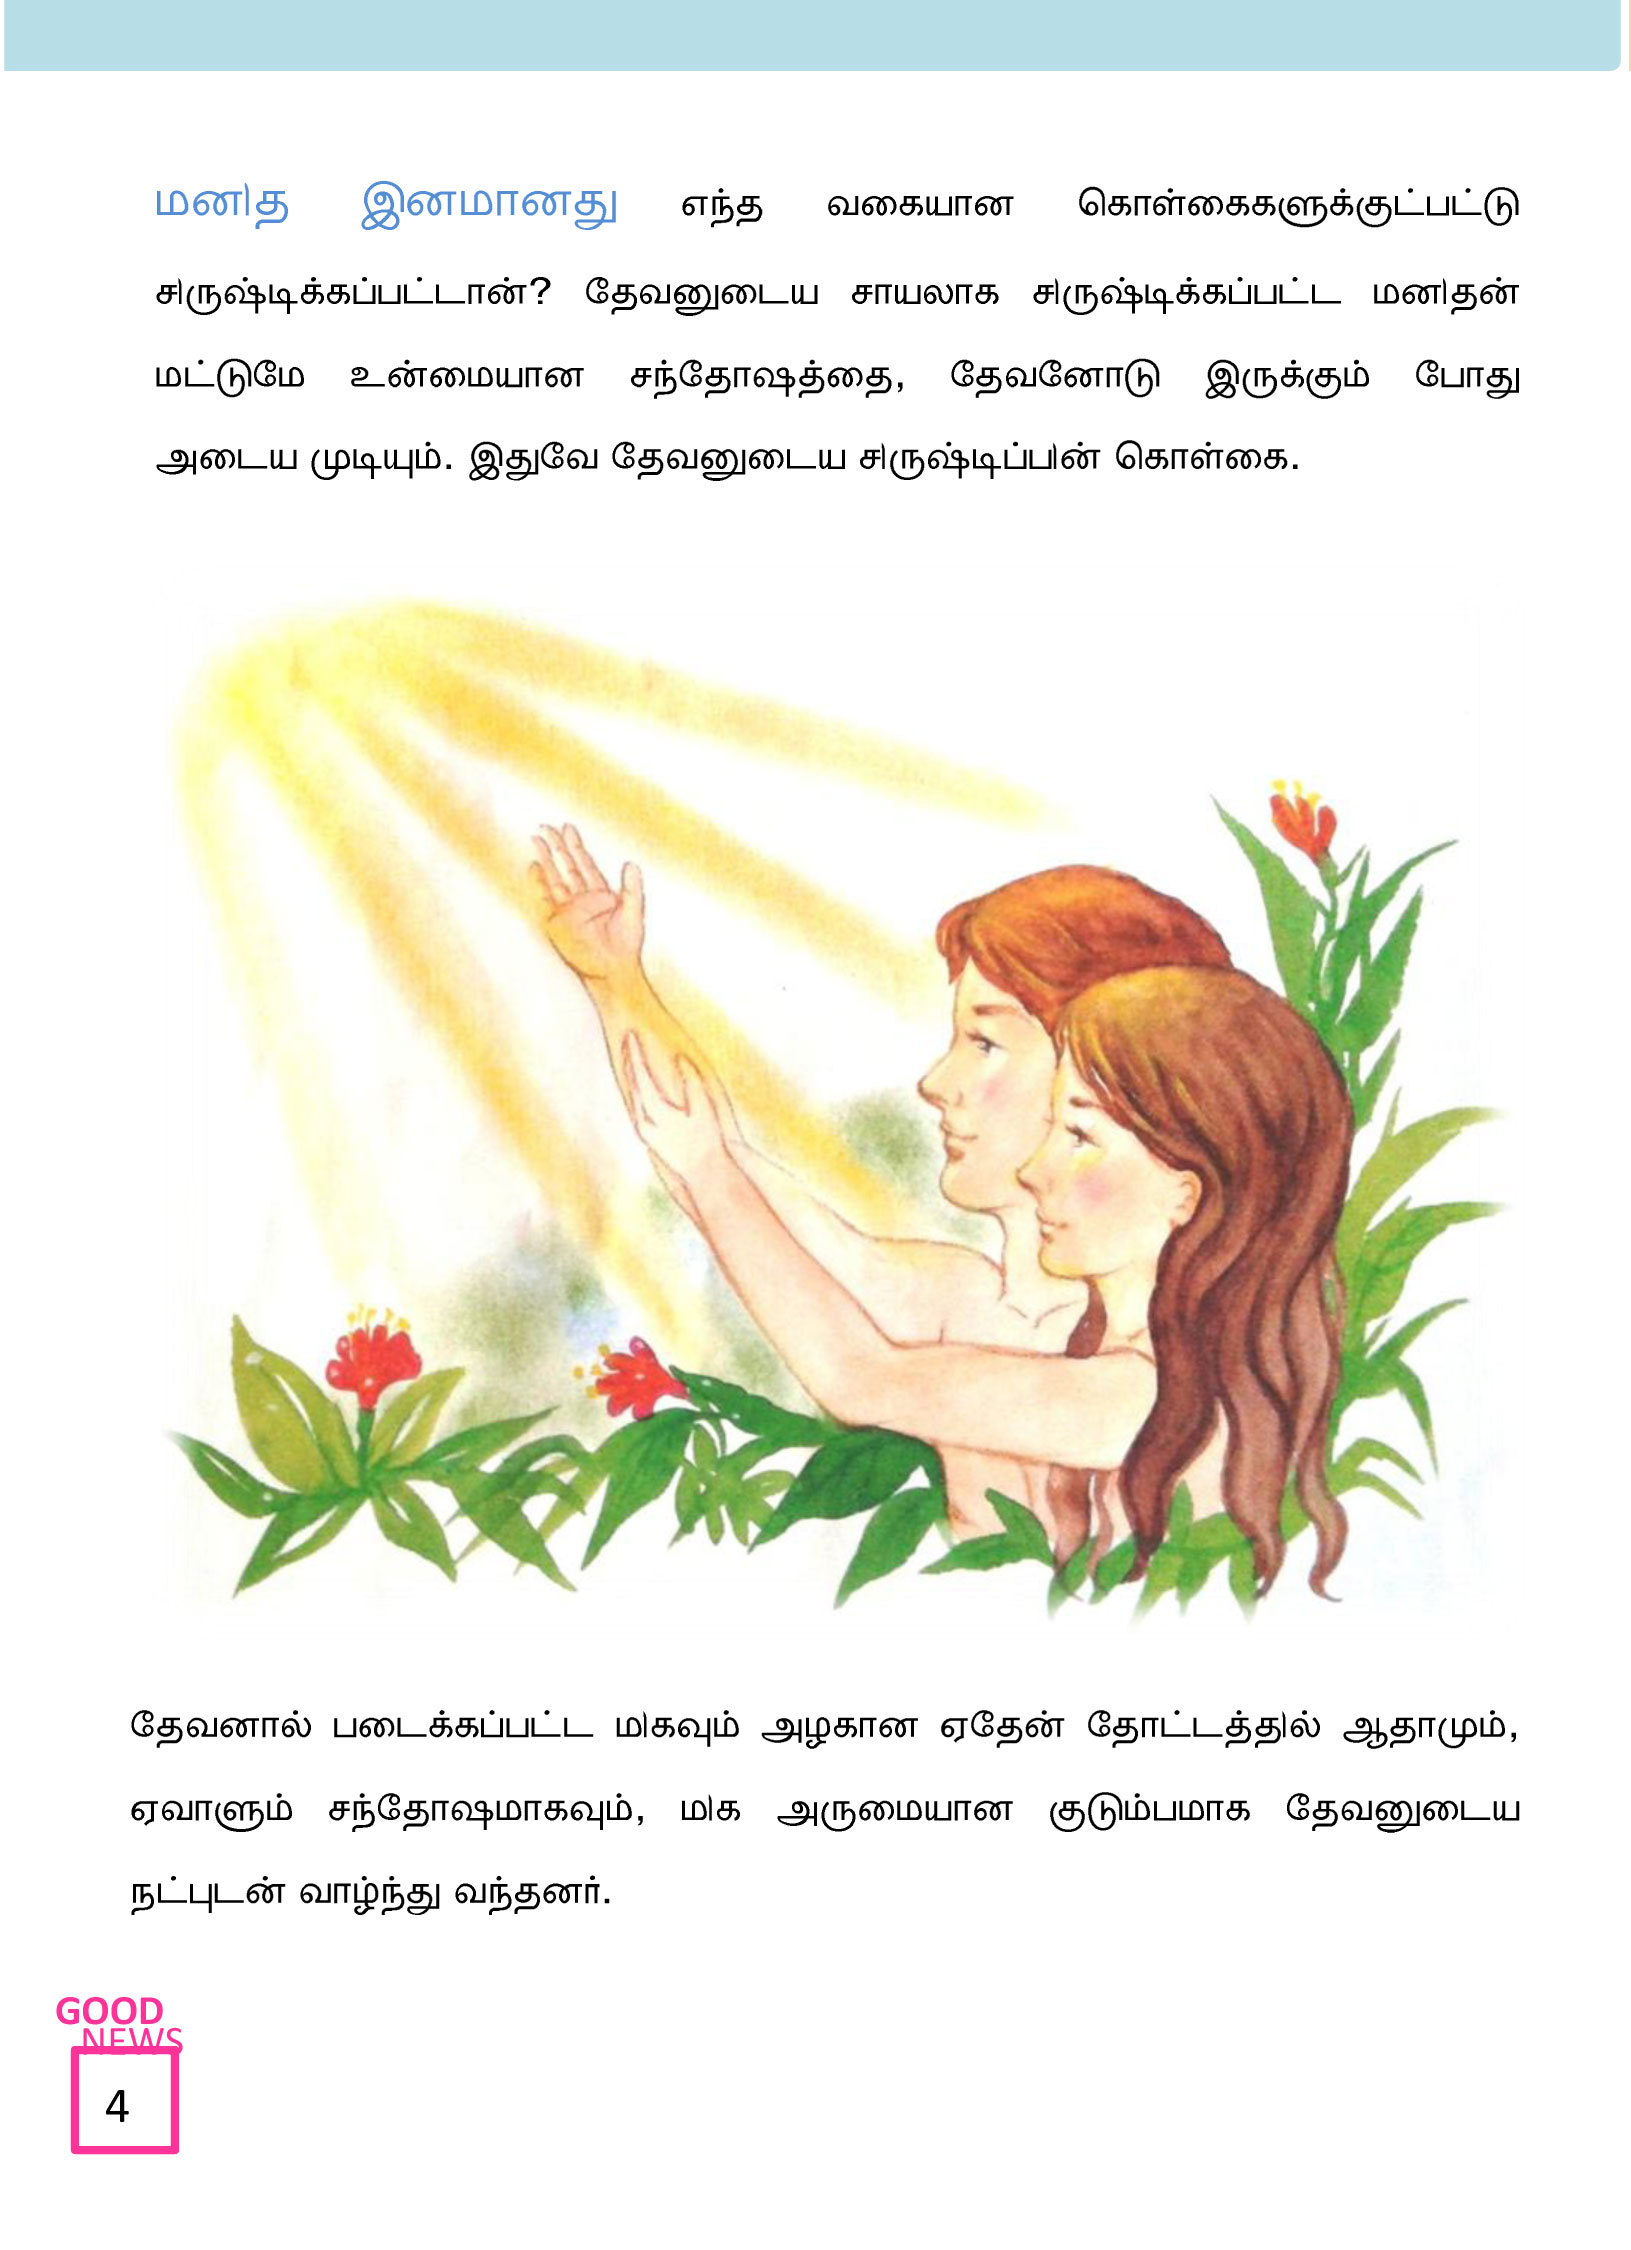 Tamil-Evangelism-Book-Pdf-3-04.jpg